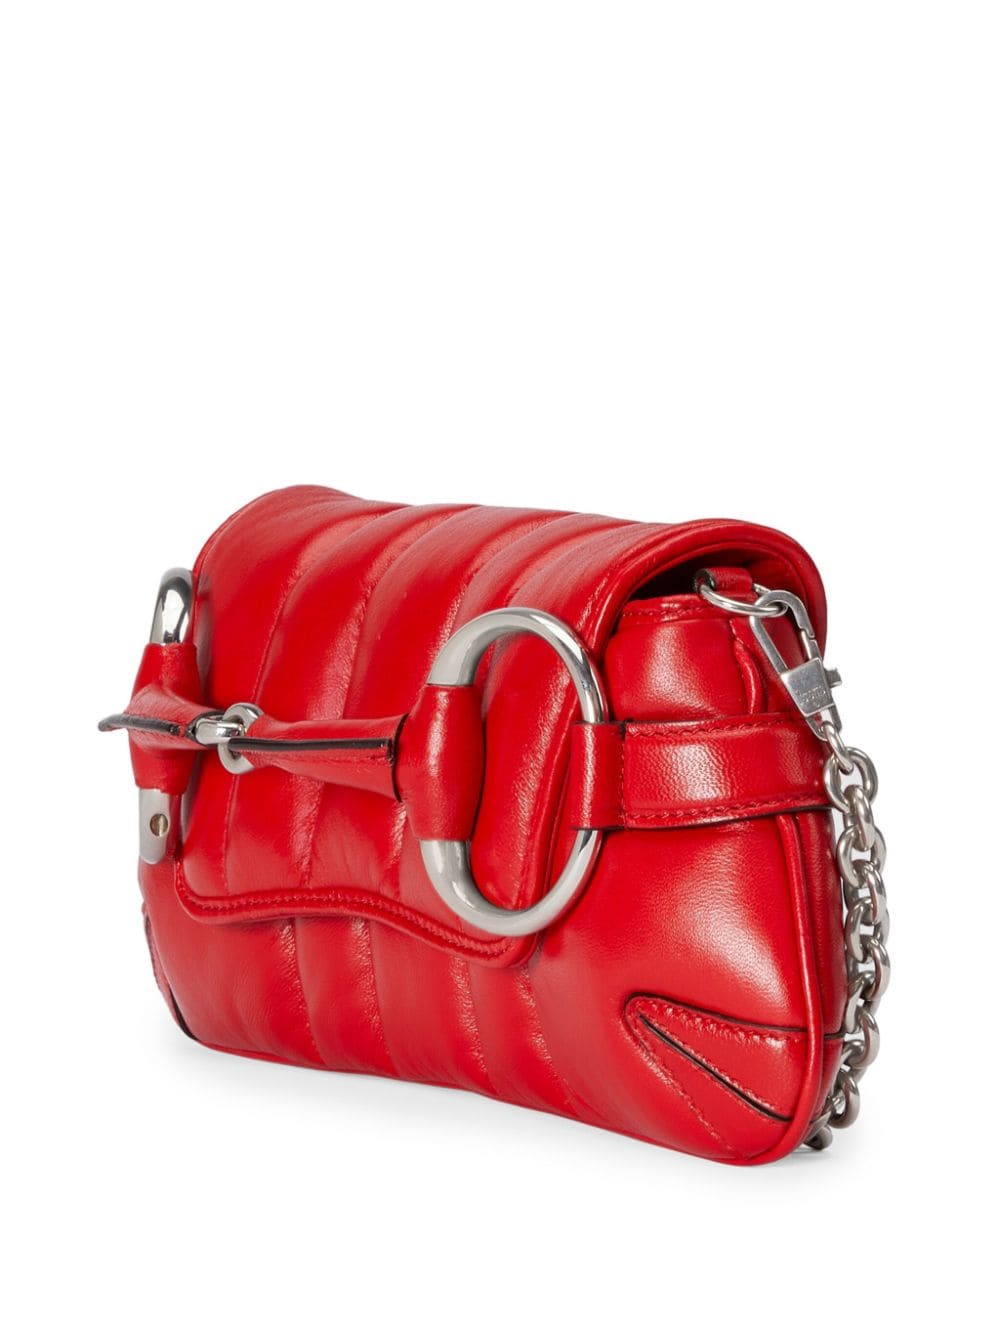 Gucci, Horsebit Chain Small Shoulder Bag